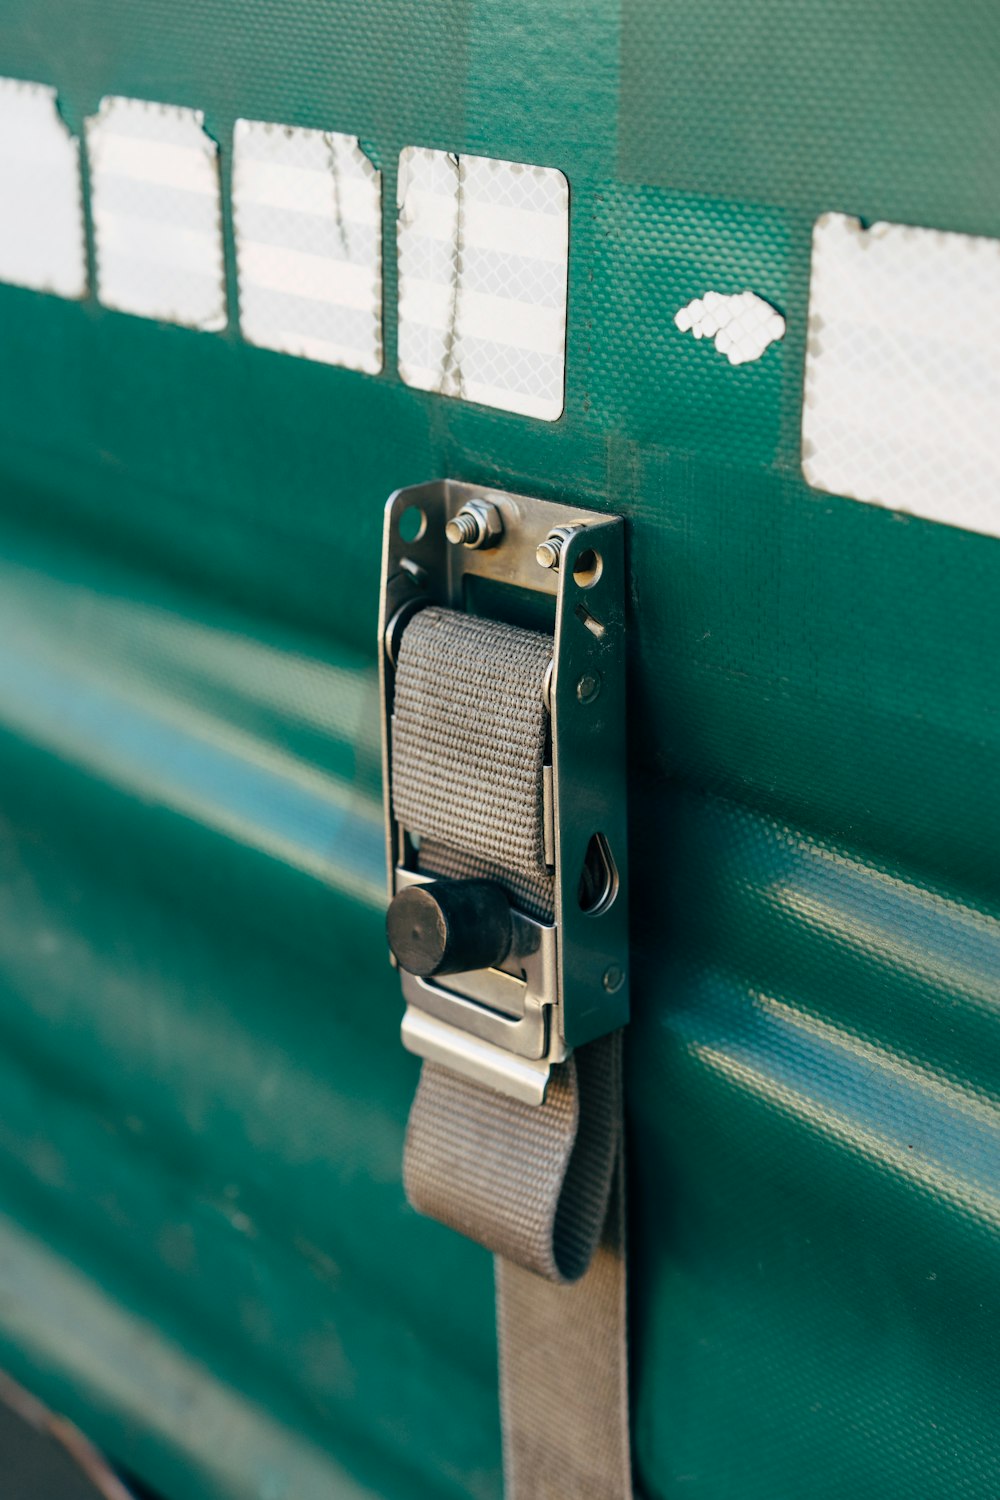 a close up of a door handle on a green door